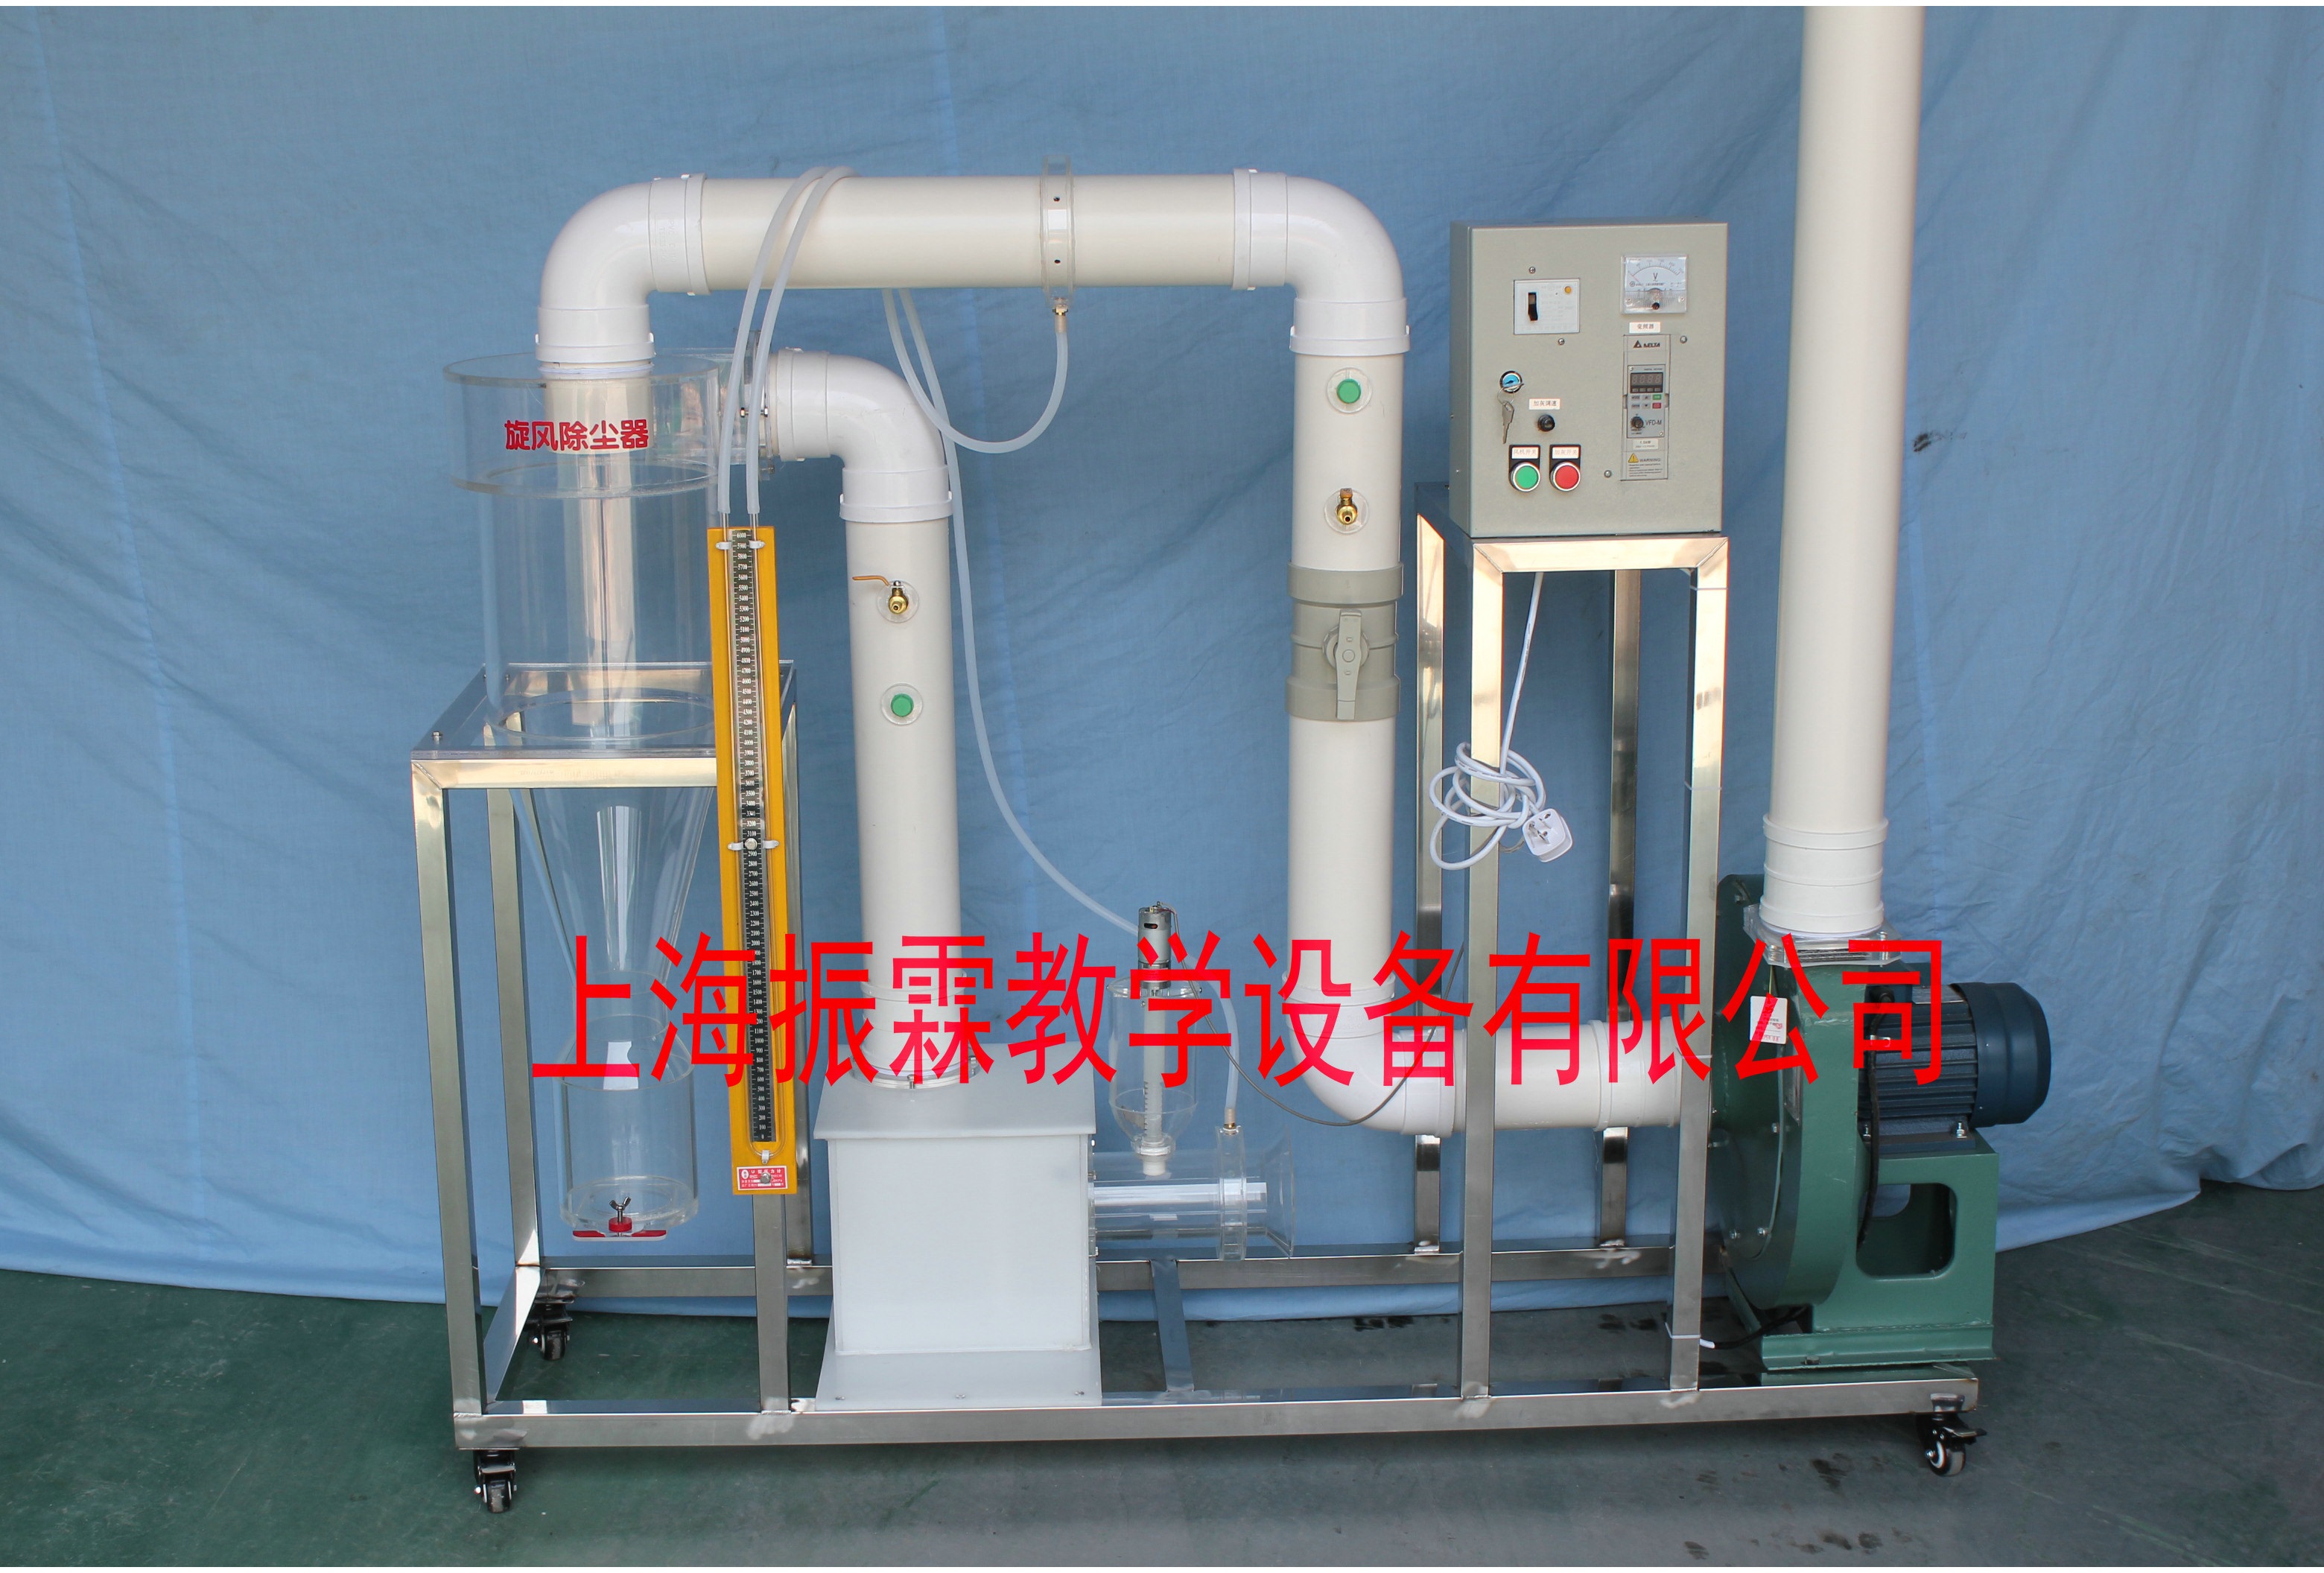 环境工程实验设备,旋风除尘器,污水处理实验装置--上海振霖教学设备有限公司